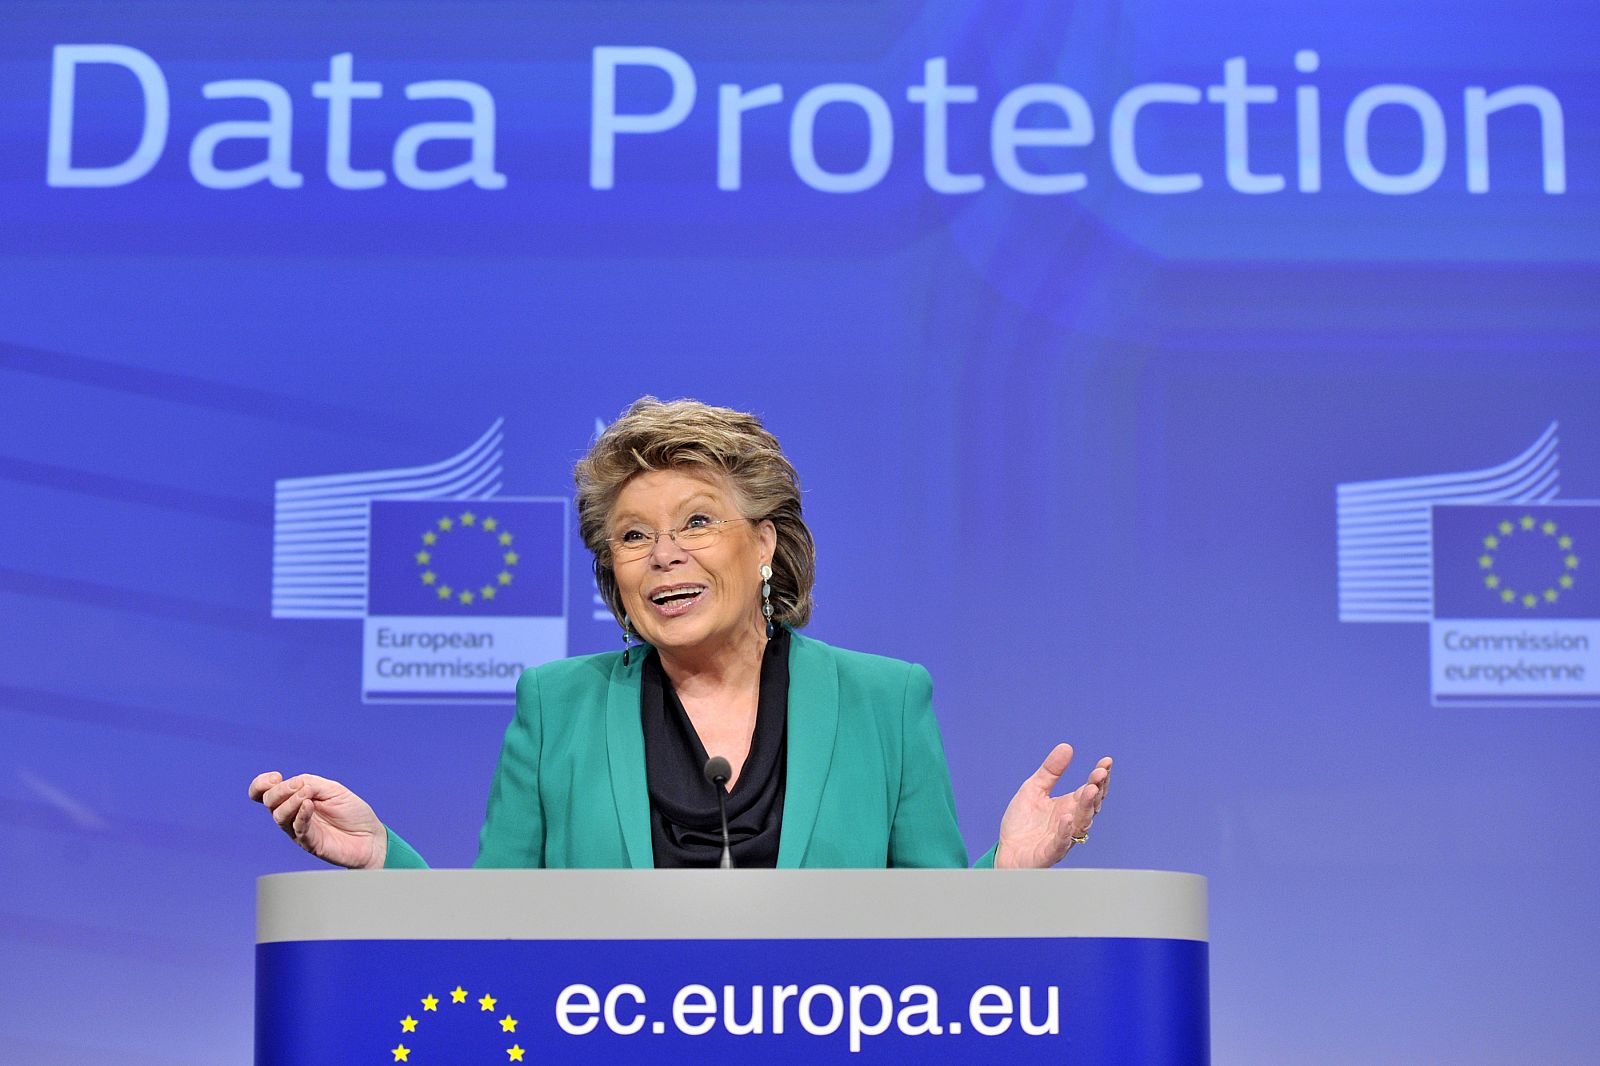 La comisaria europea a cargo de la protección de datos, Viviane Reding, durante la rueda de prensa sobre los cambios en las leyes europeas de protección de datos.